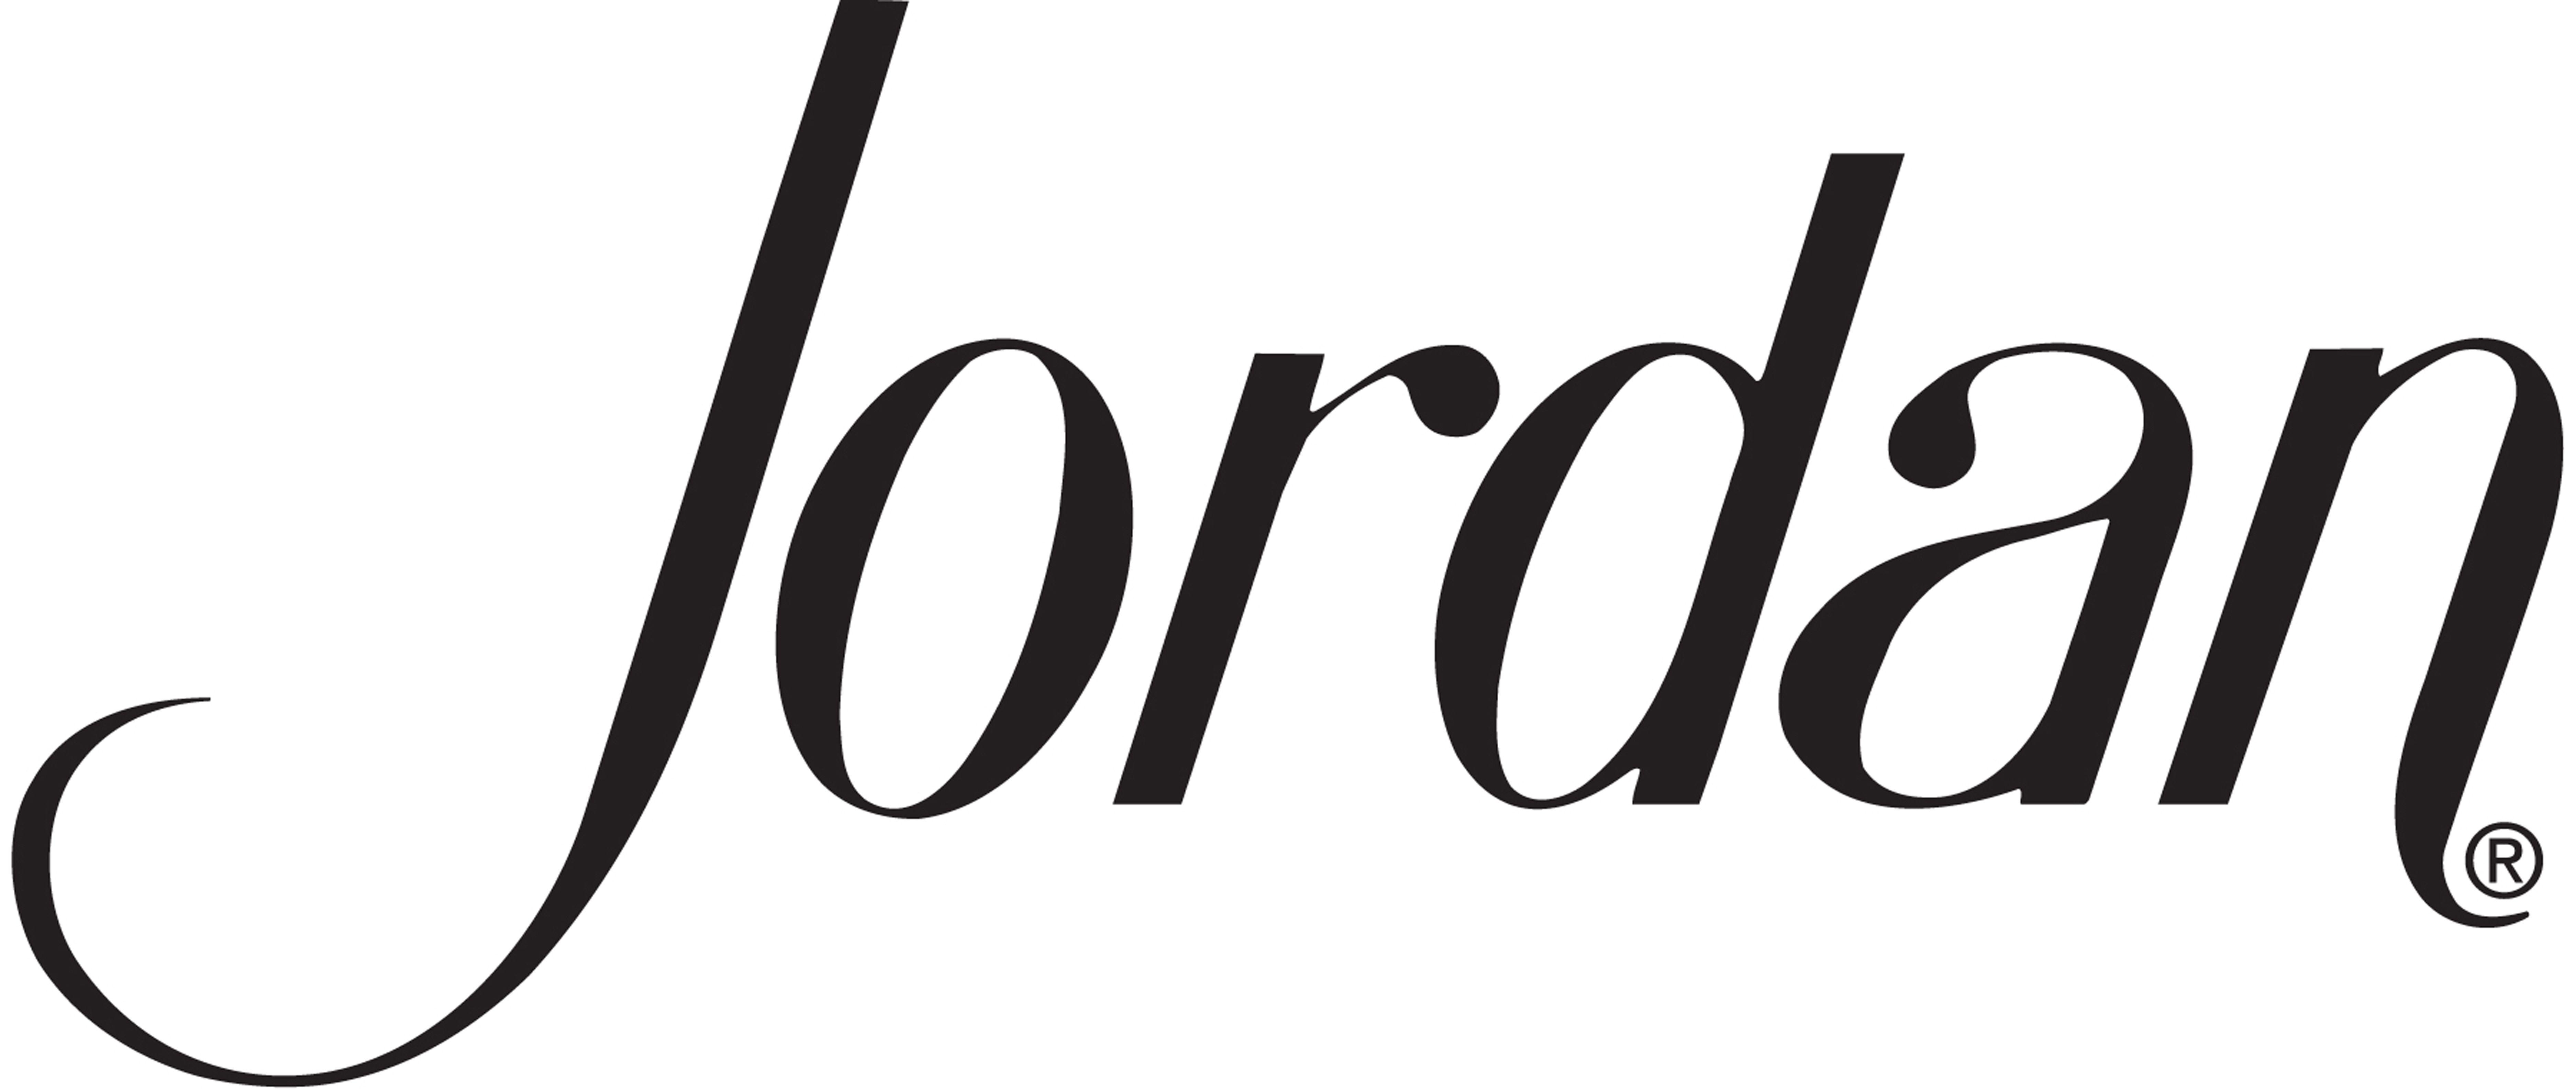 Graffiti Jordan Logo - Logos